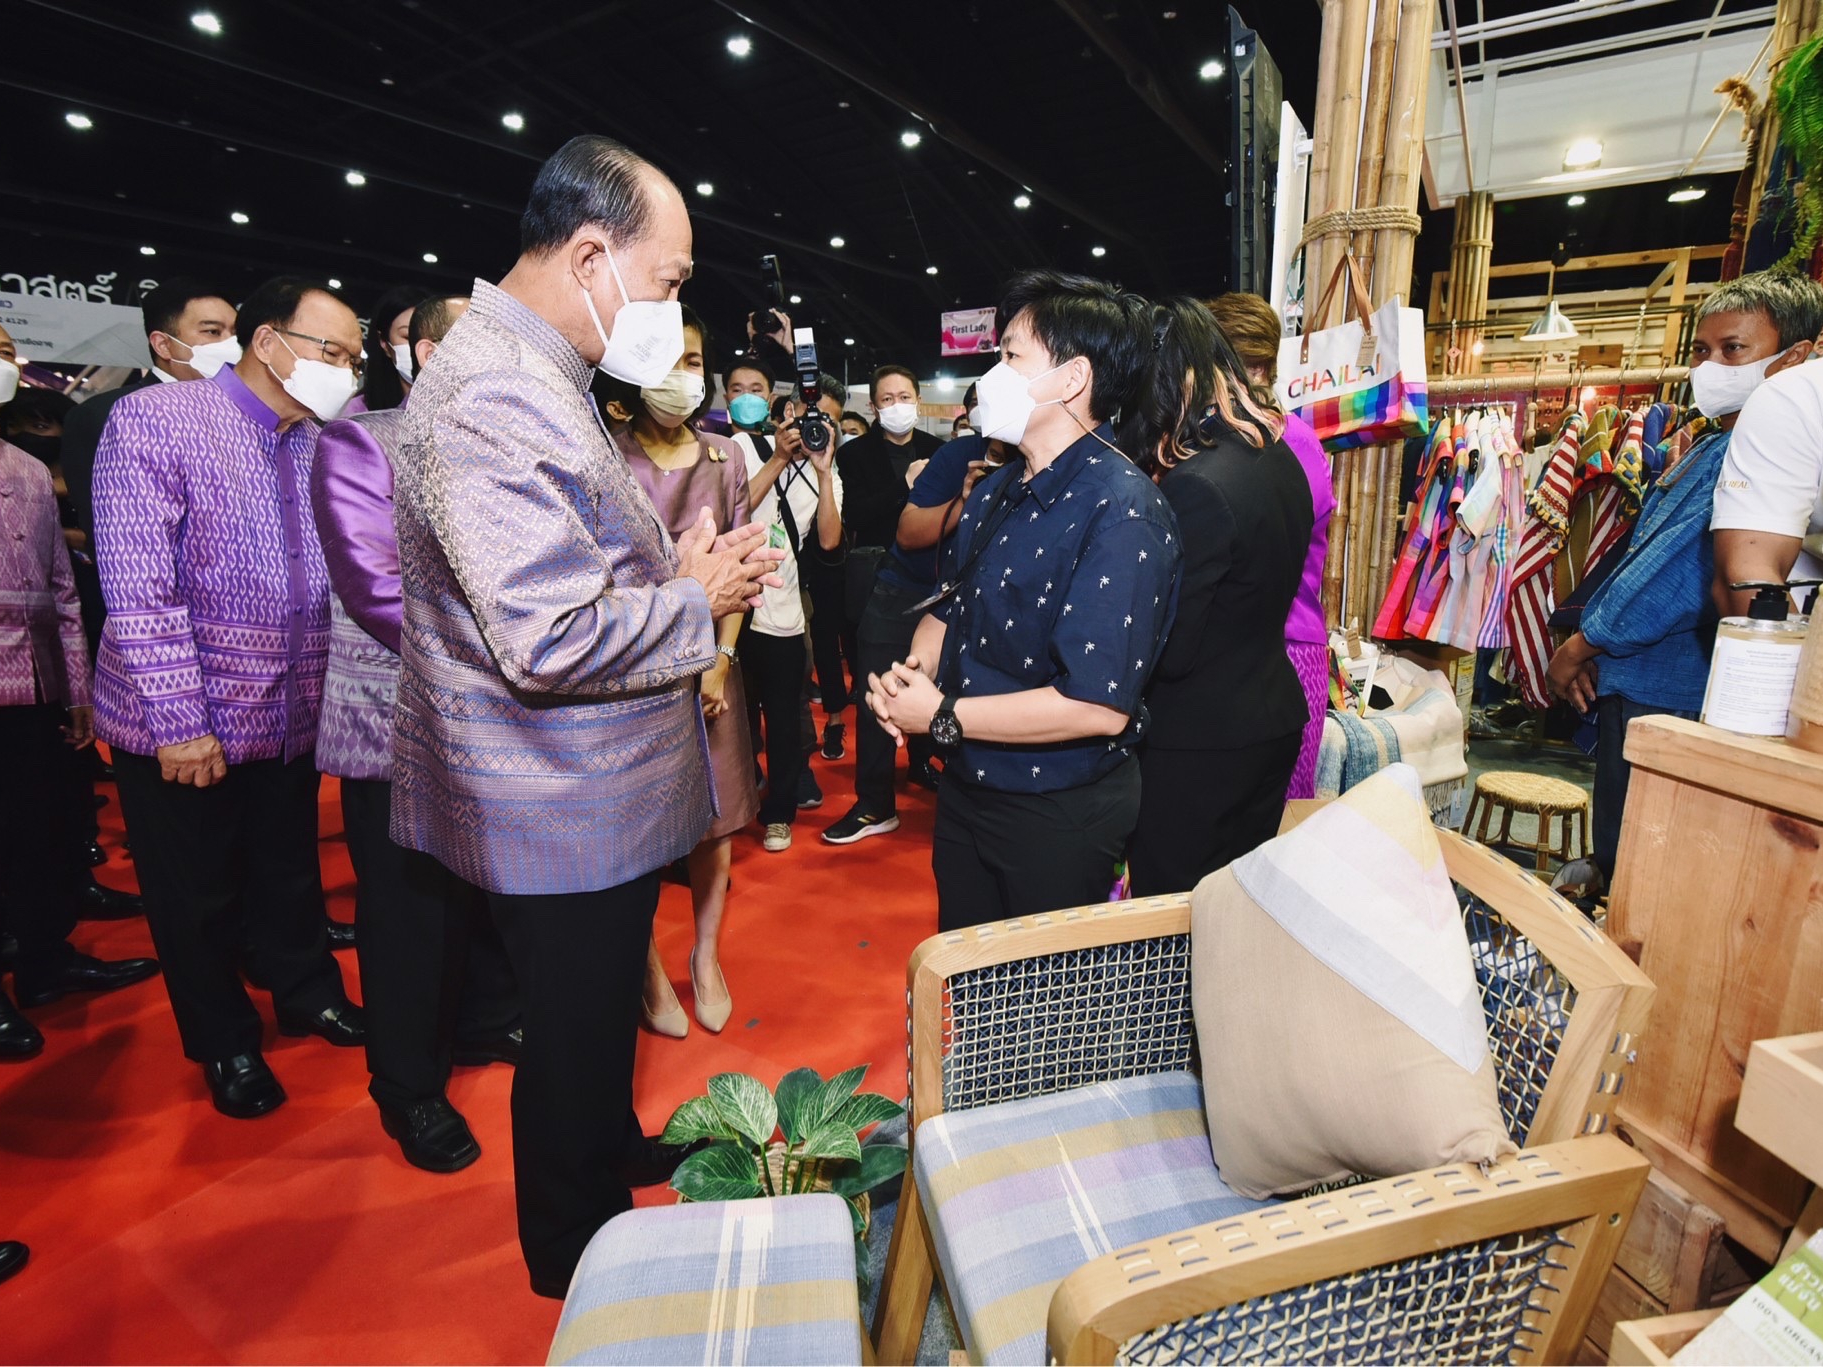 ประชารัฐรักสามัคคีฯ ประเทศไทย ร่วมออกบูธงาน “OTOP Midyear 2022”  ผลักดันผลิตภัณฑ์ชุมชนออกสู่ตลาด สร้างรายได้กว่า 2.4 ล้านบาท